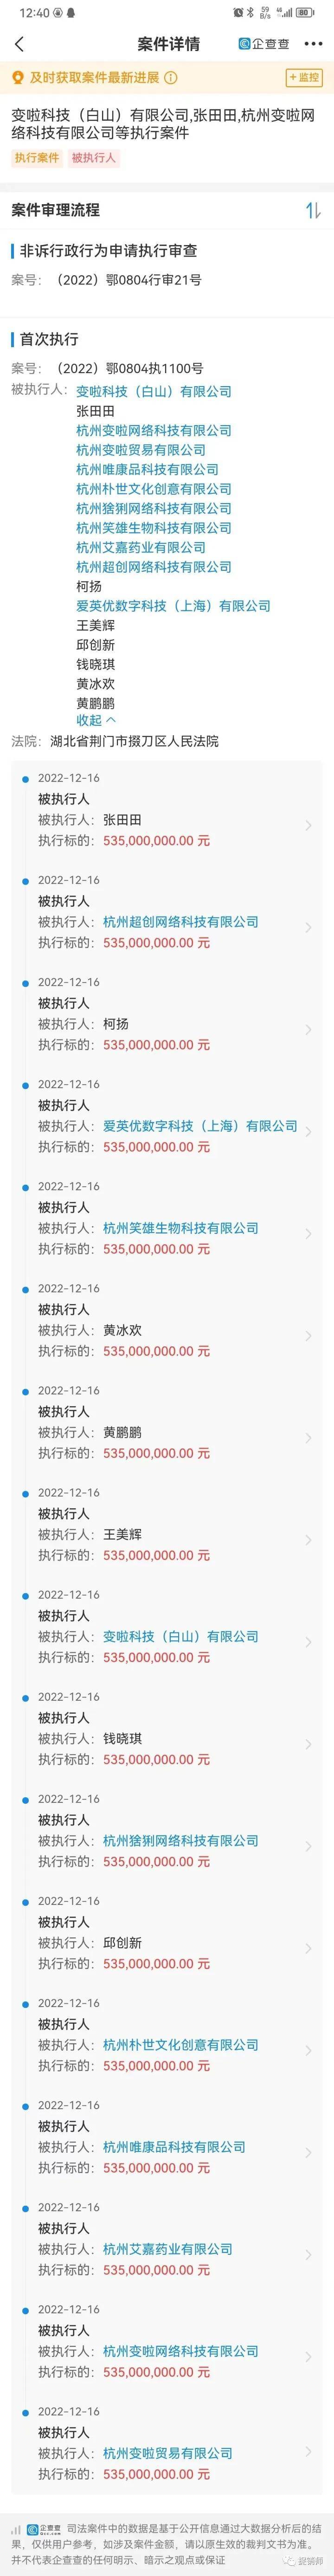 华为手机应用软件SD卡
:杭州变啦网络科技有限公司相关企业及个人成被执行人，执行标的5.35亿元